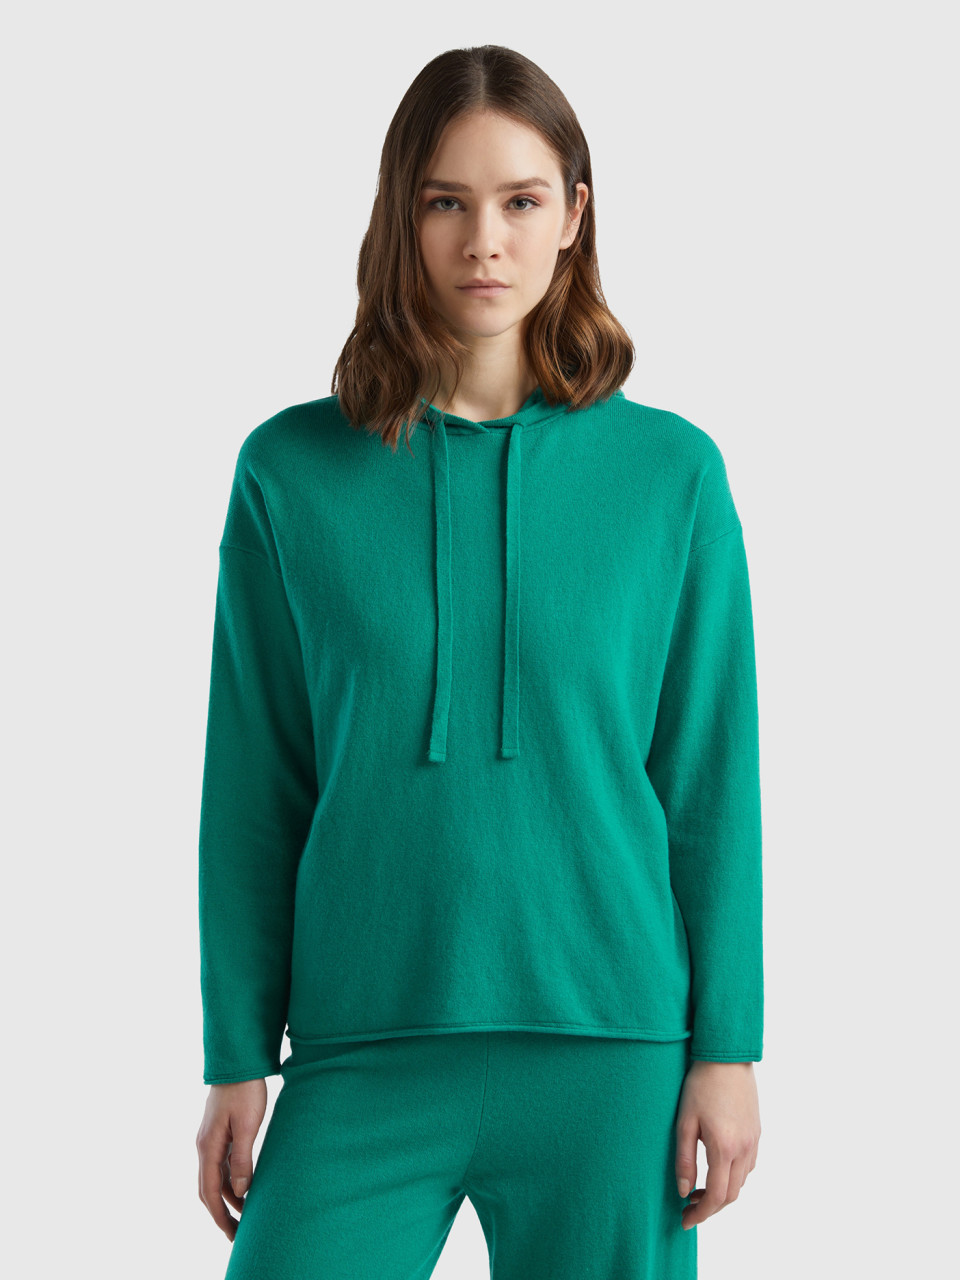 Benetton, Aqua Green Cashmere Blend Sweater With Hood, Green, Women